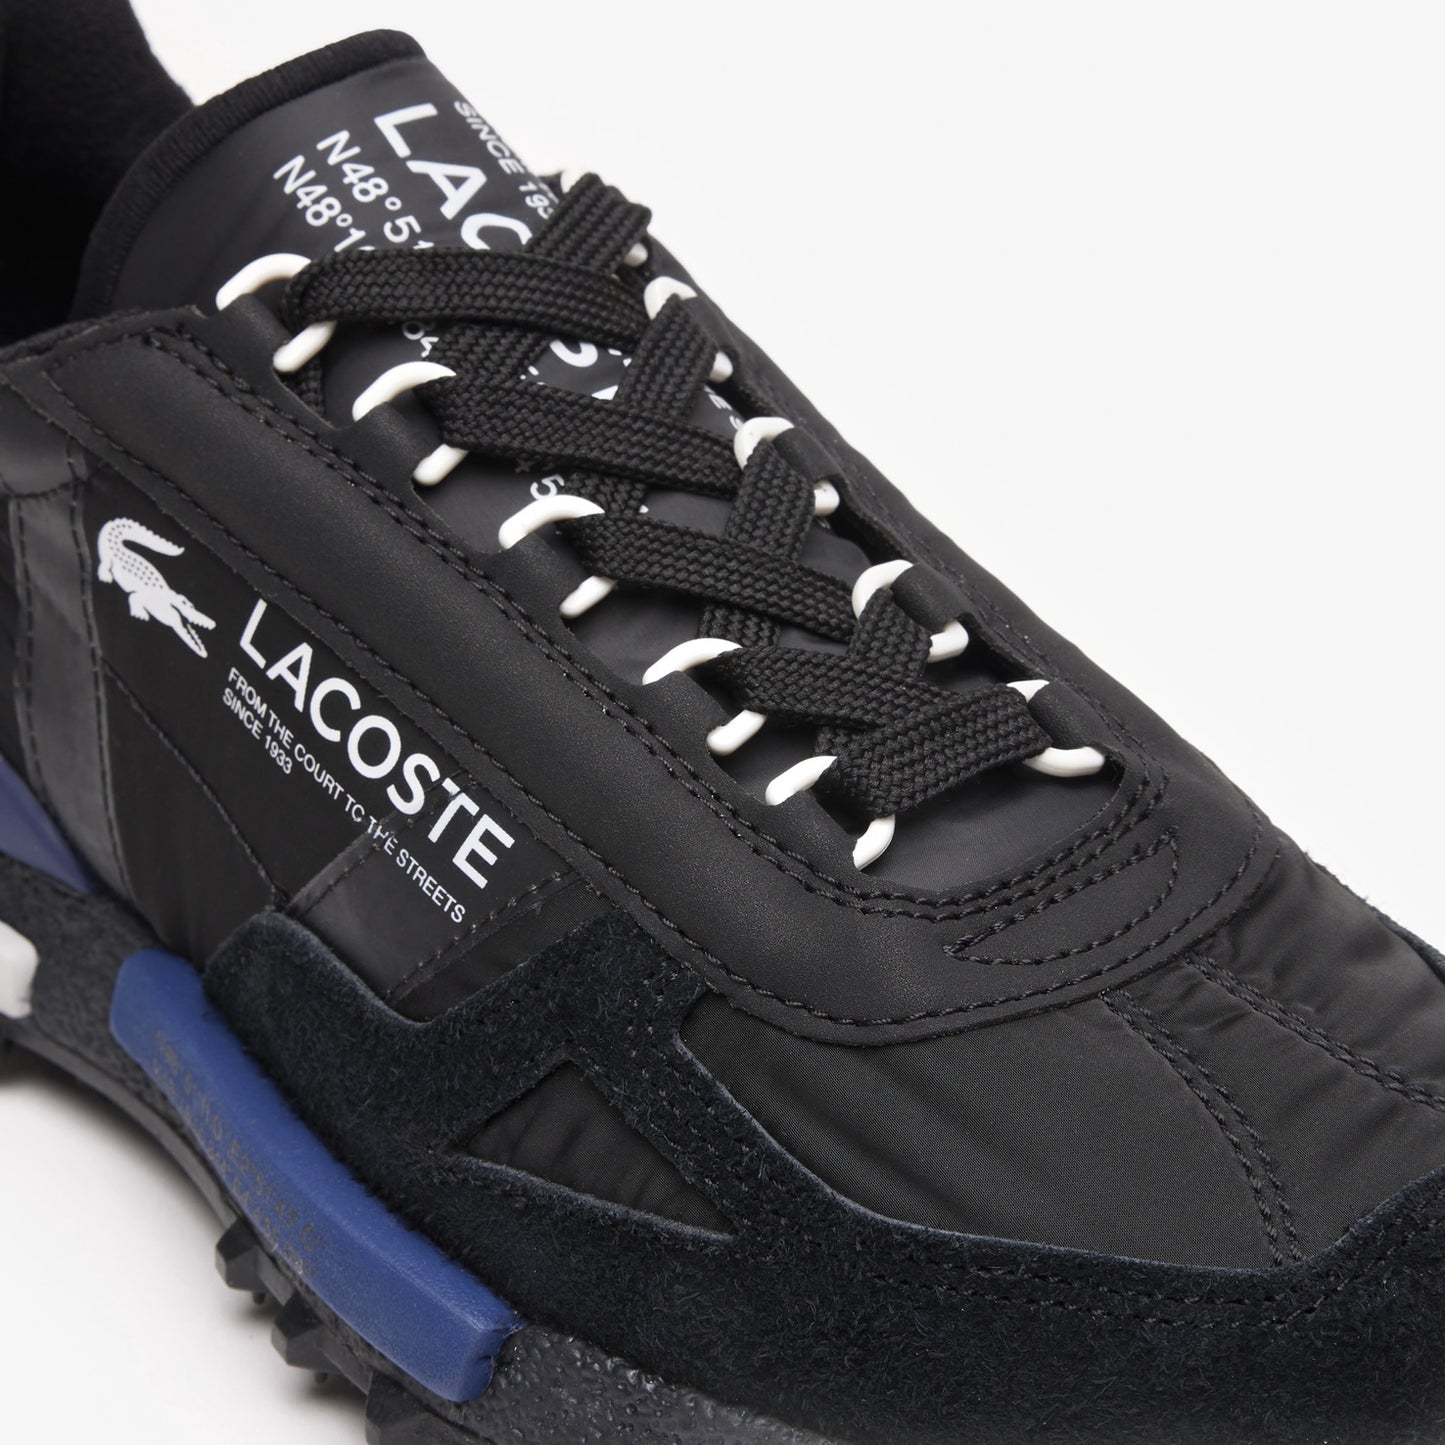 LACOSTE Men's Elite Active Sneakers - Black/Navy